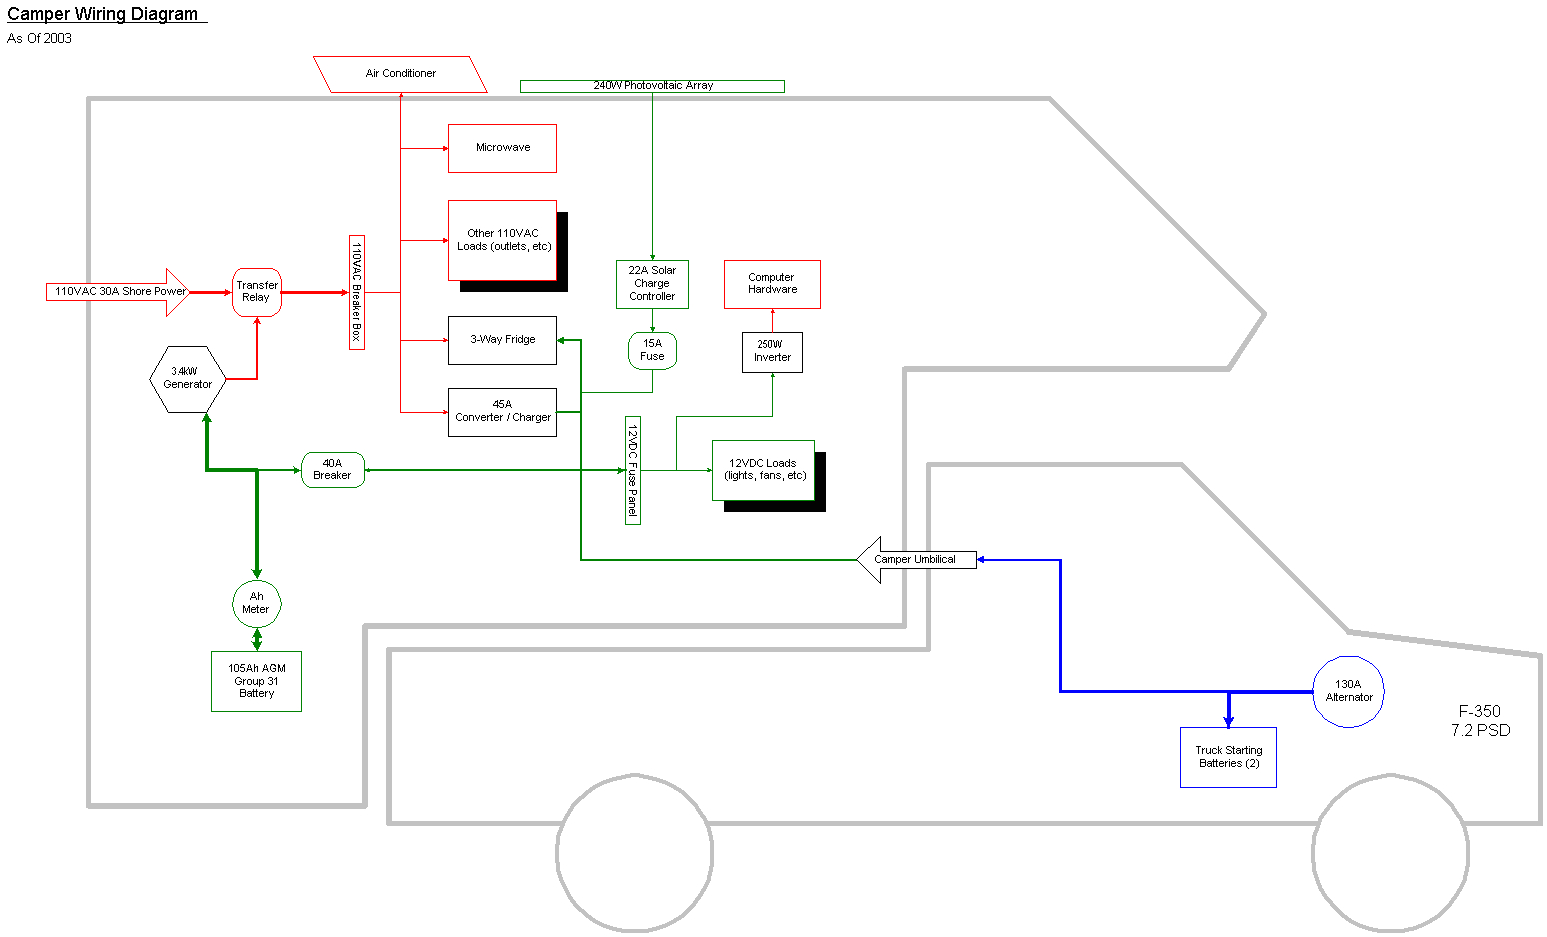 slide in camper wiring diagram wiring diagram sort lance camper wiring diagram